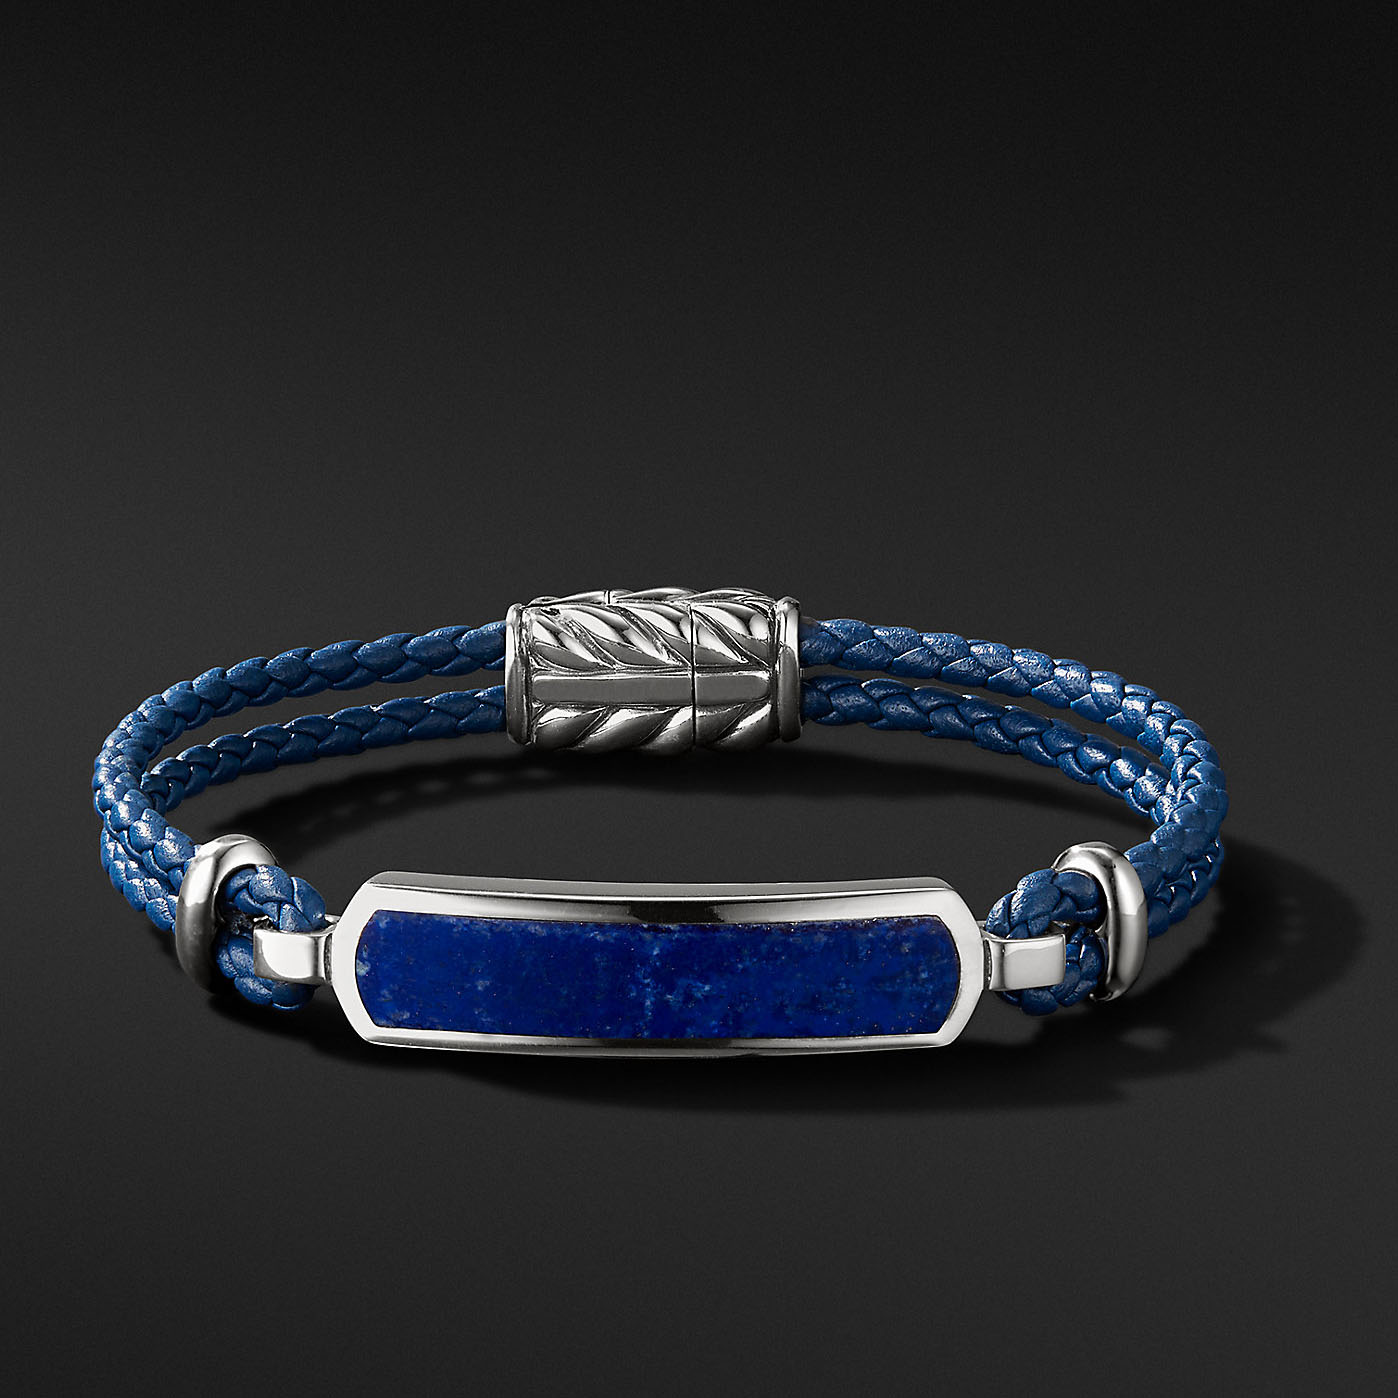 Atacado OEM masculino esterlina OEM / ODM joias pulseira de prata com design de couro azul seu fornecedor de joias